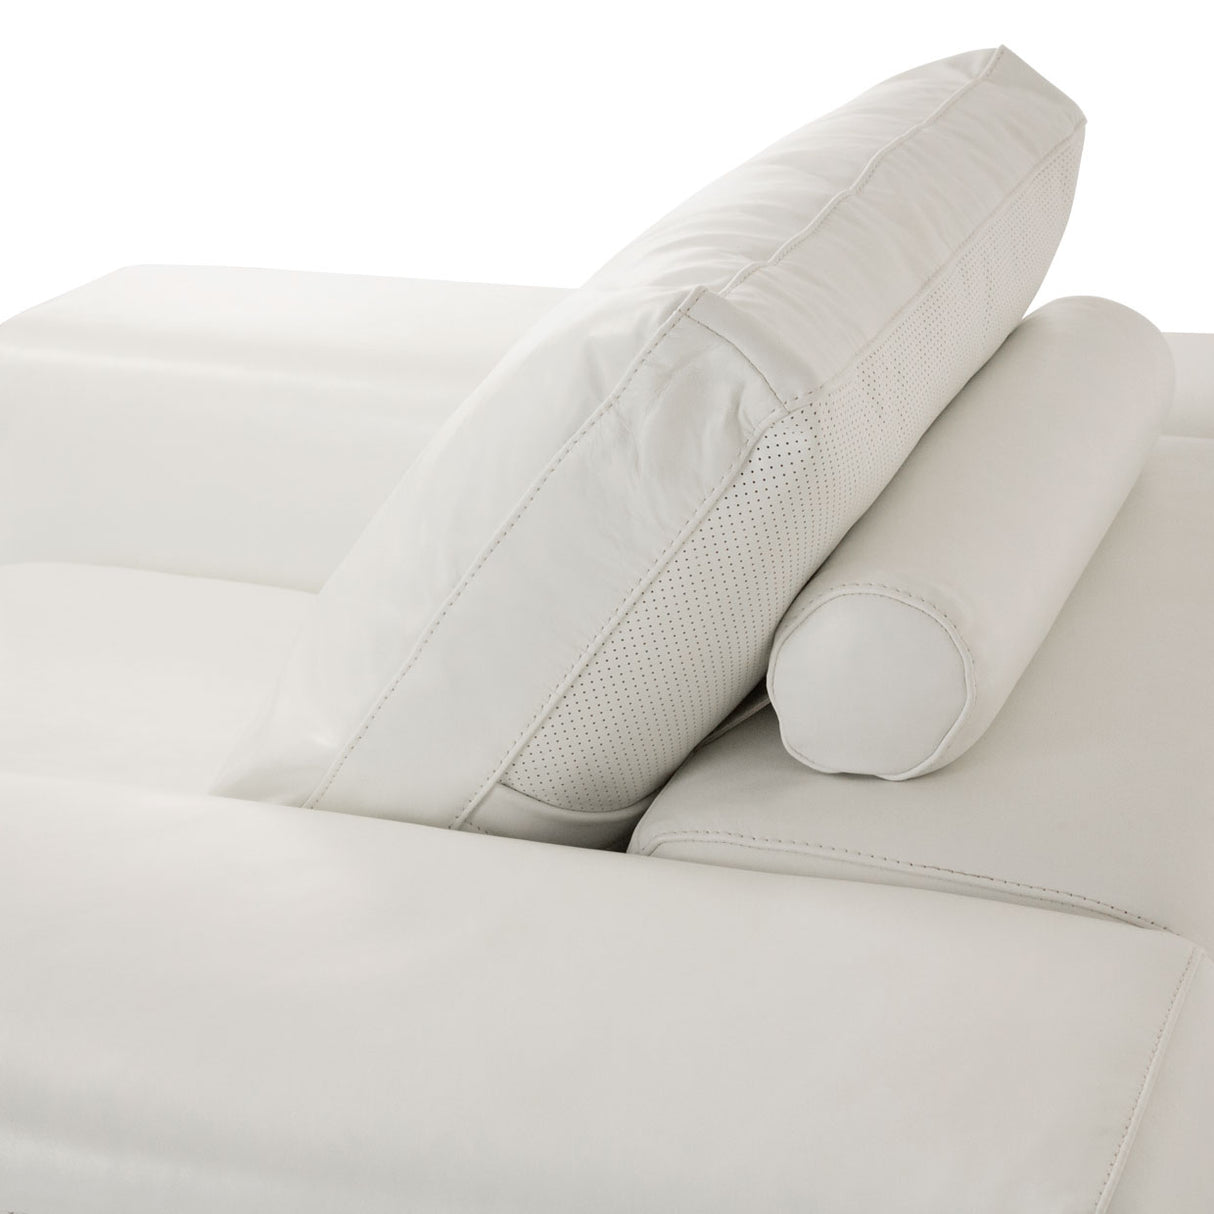 Aico Furniture - Mia Bella  Ciras Leather Chair In Cream Color Mb-Ciras35-Crm-13 - Home Elegance USA